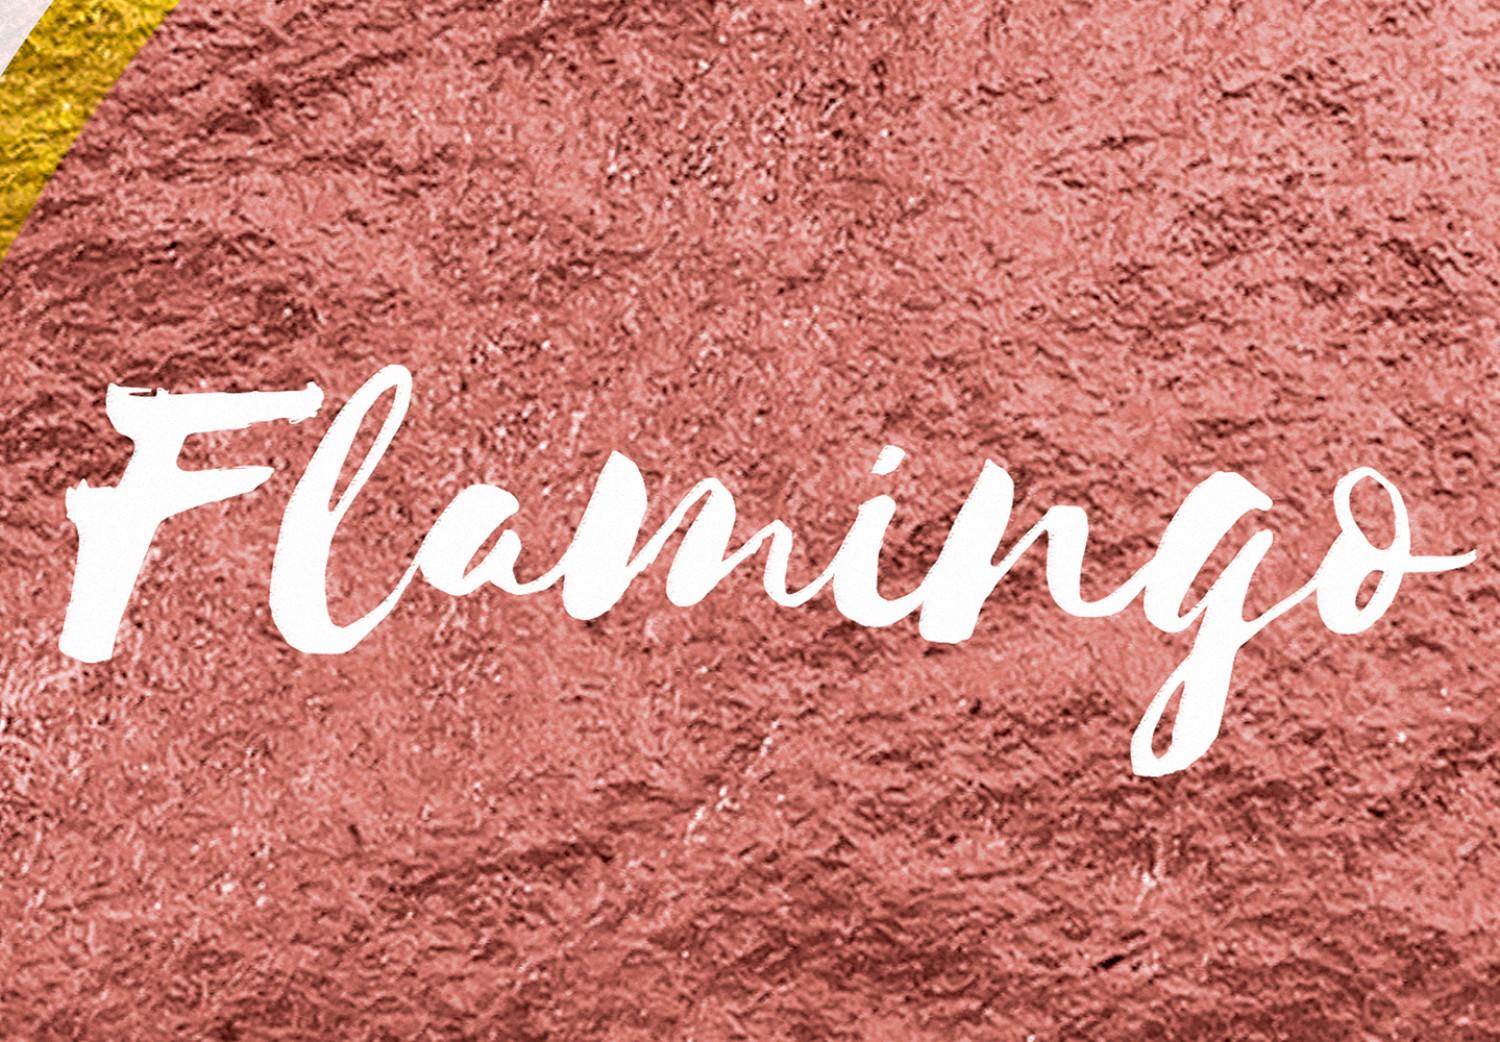 Cuadro Flamingo de pie sobre corazón invertido - pájaro con frase en inglés